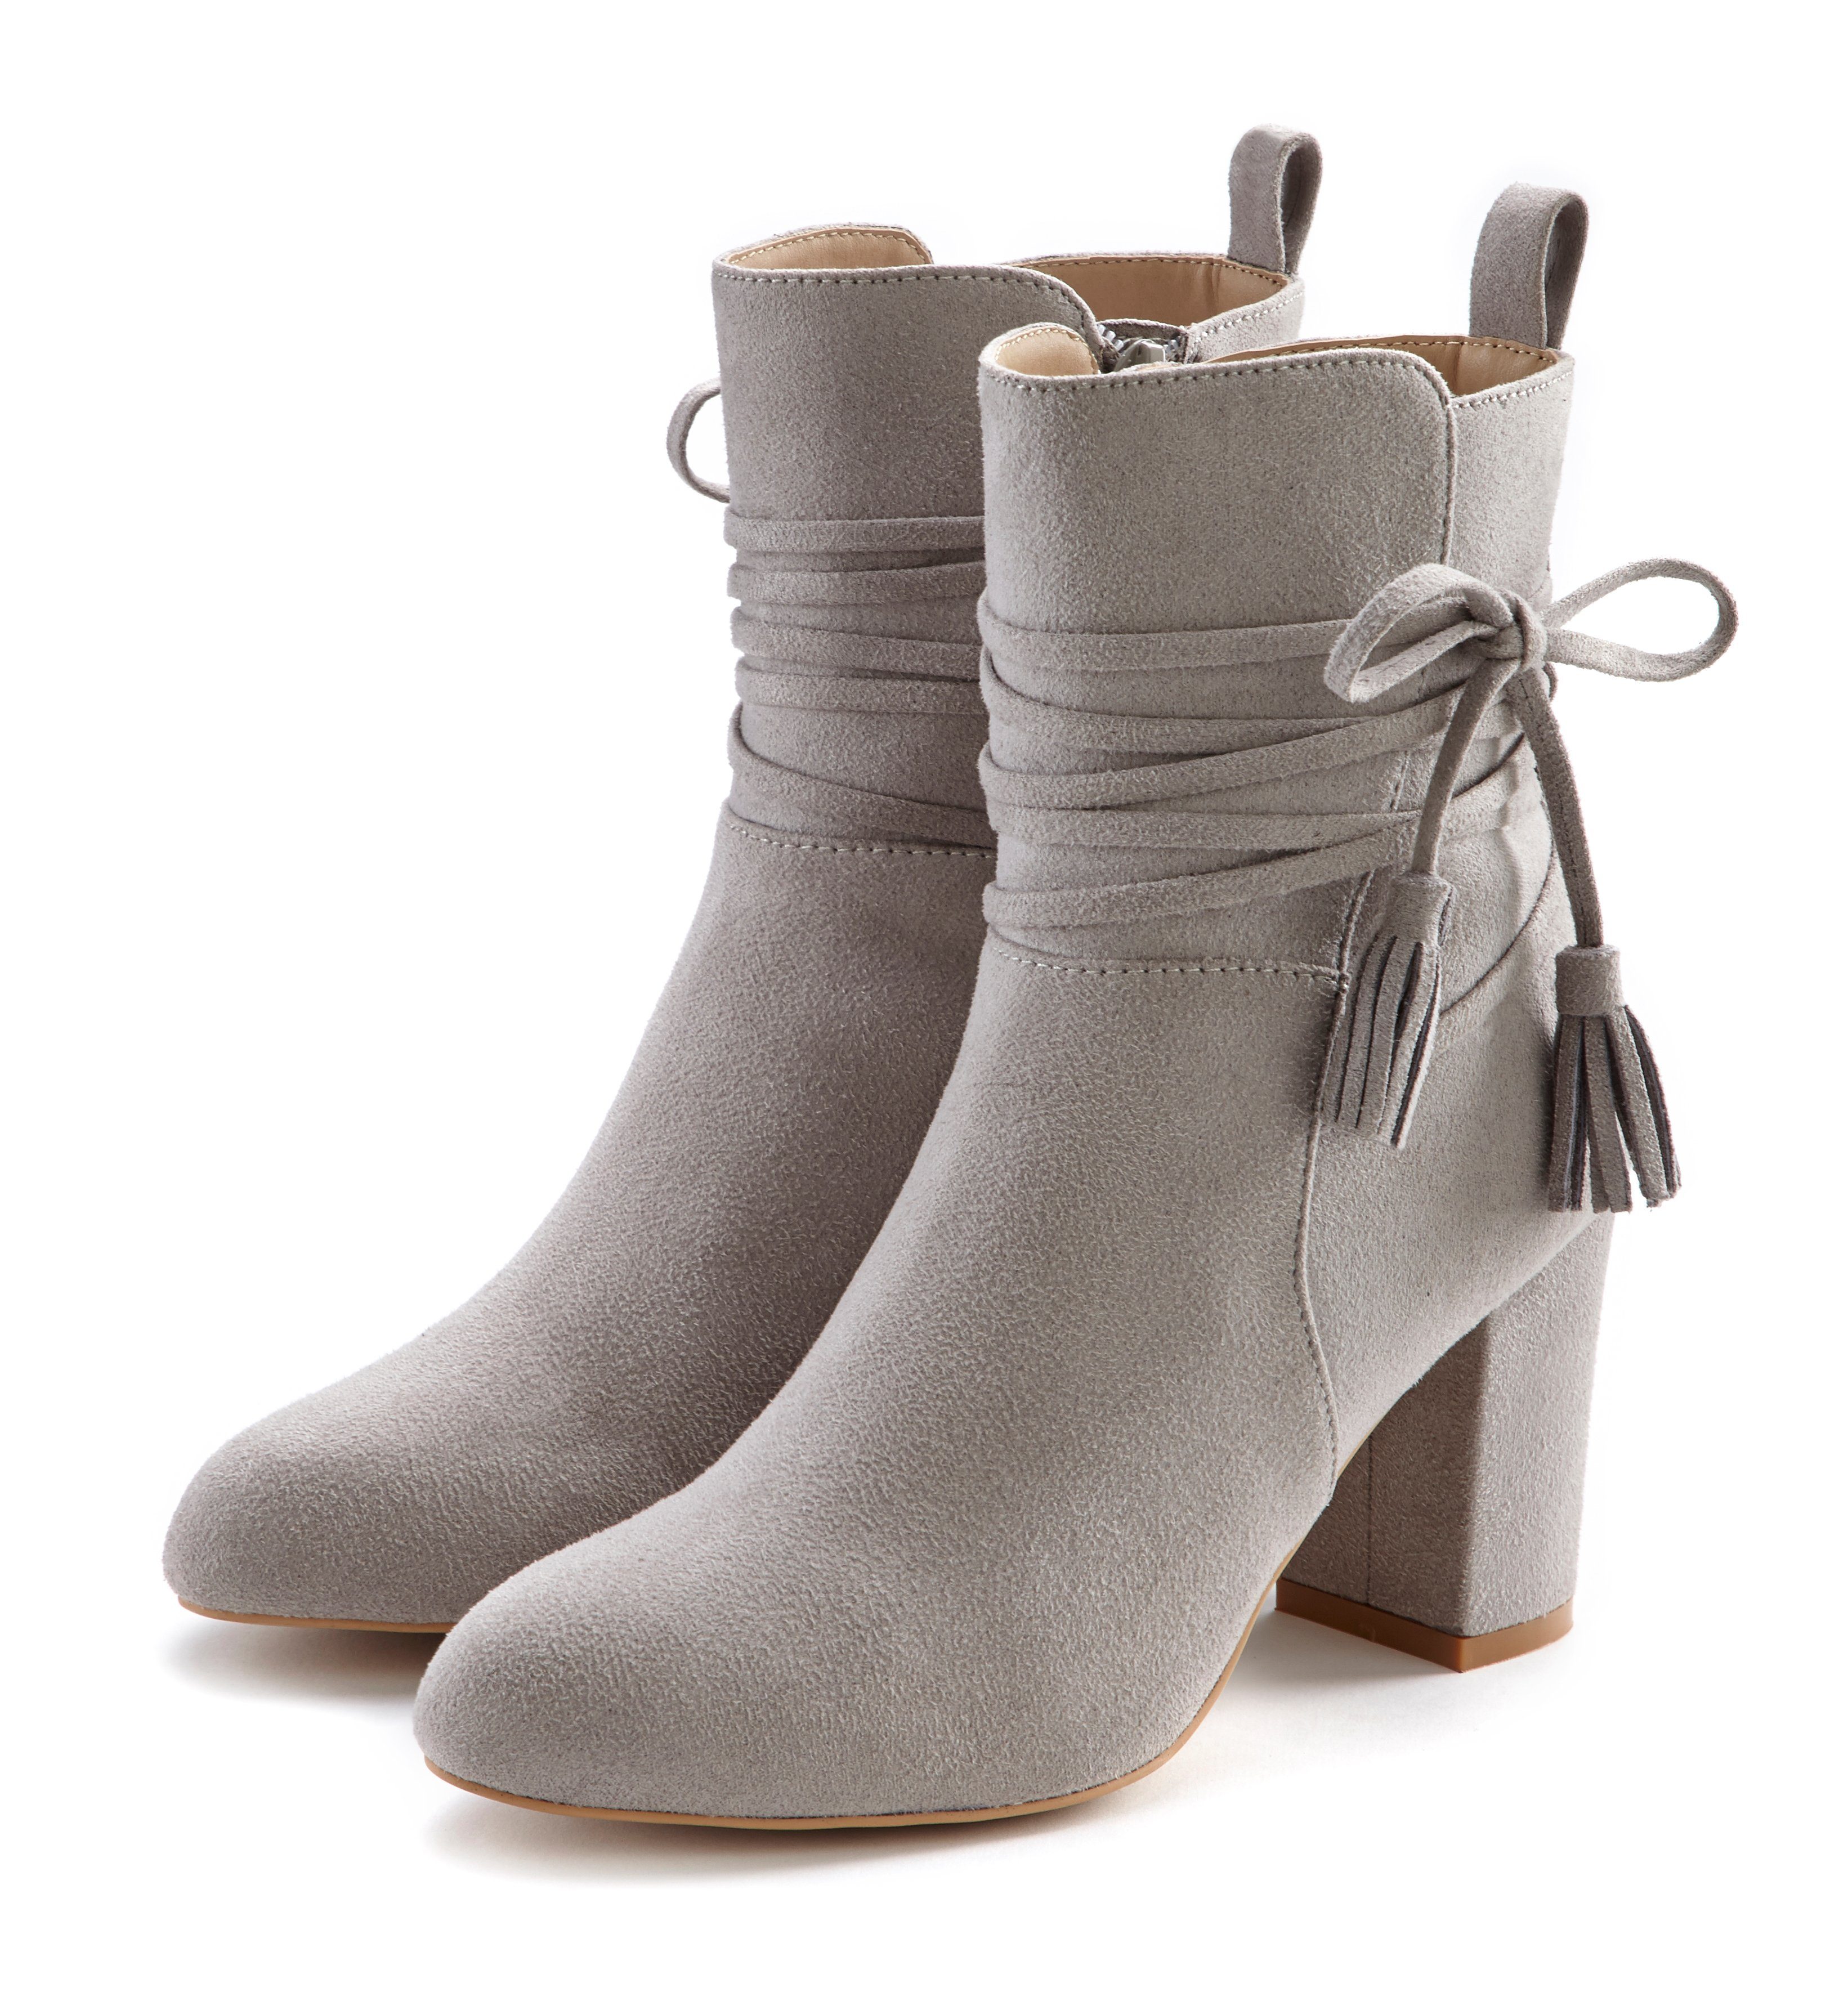 hellgrau Stiefelette High-Heel-Stiefelette, Boots, Ankle Stiefel mit Blockabsatz, LASCANA